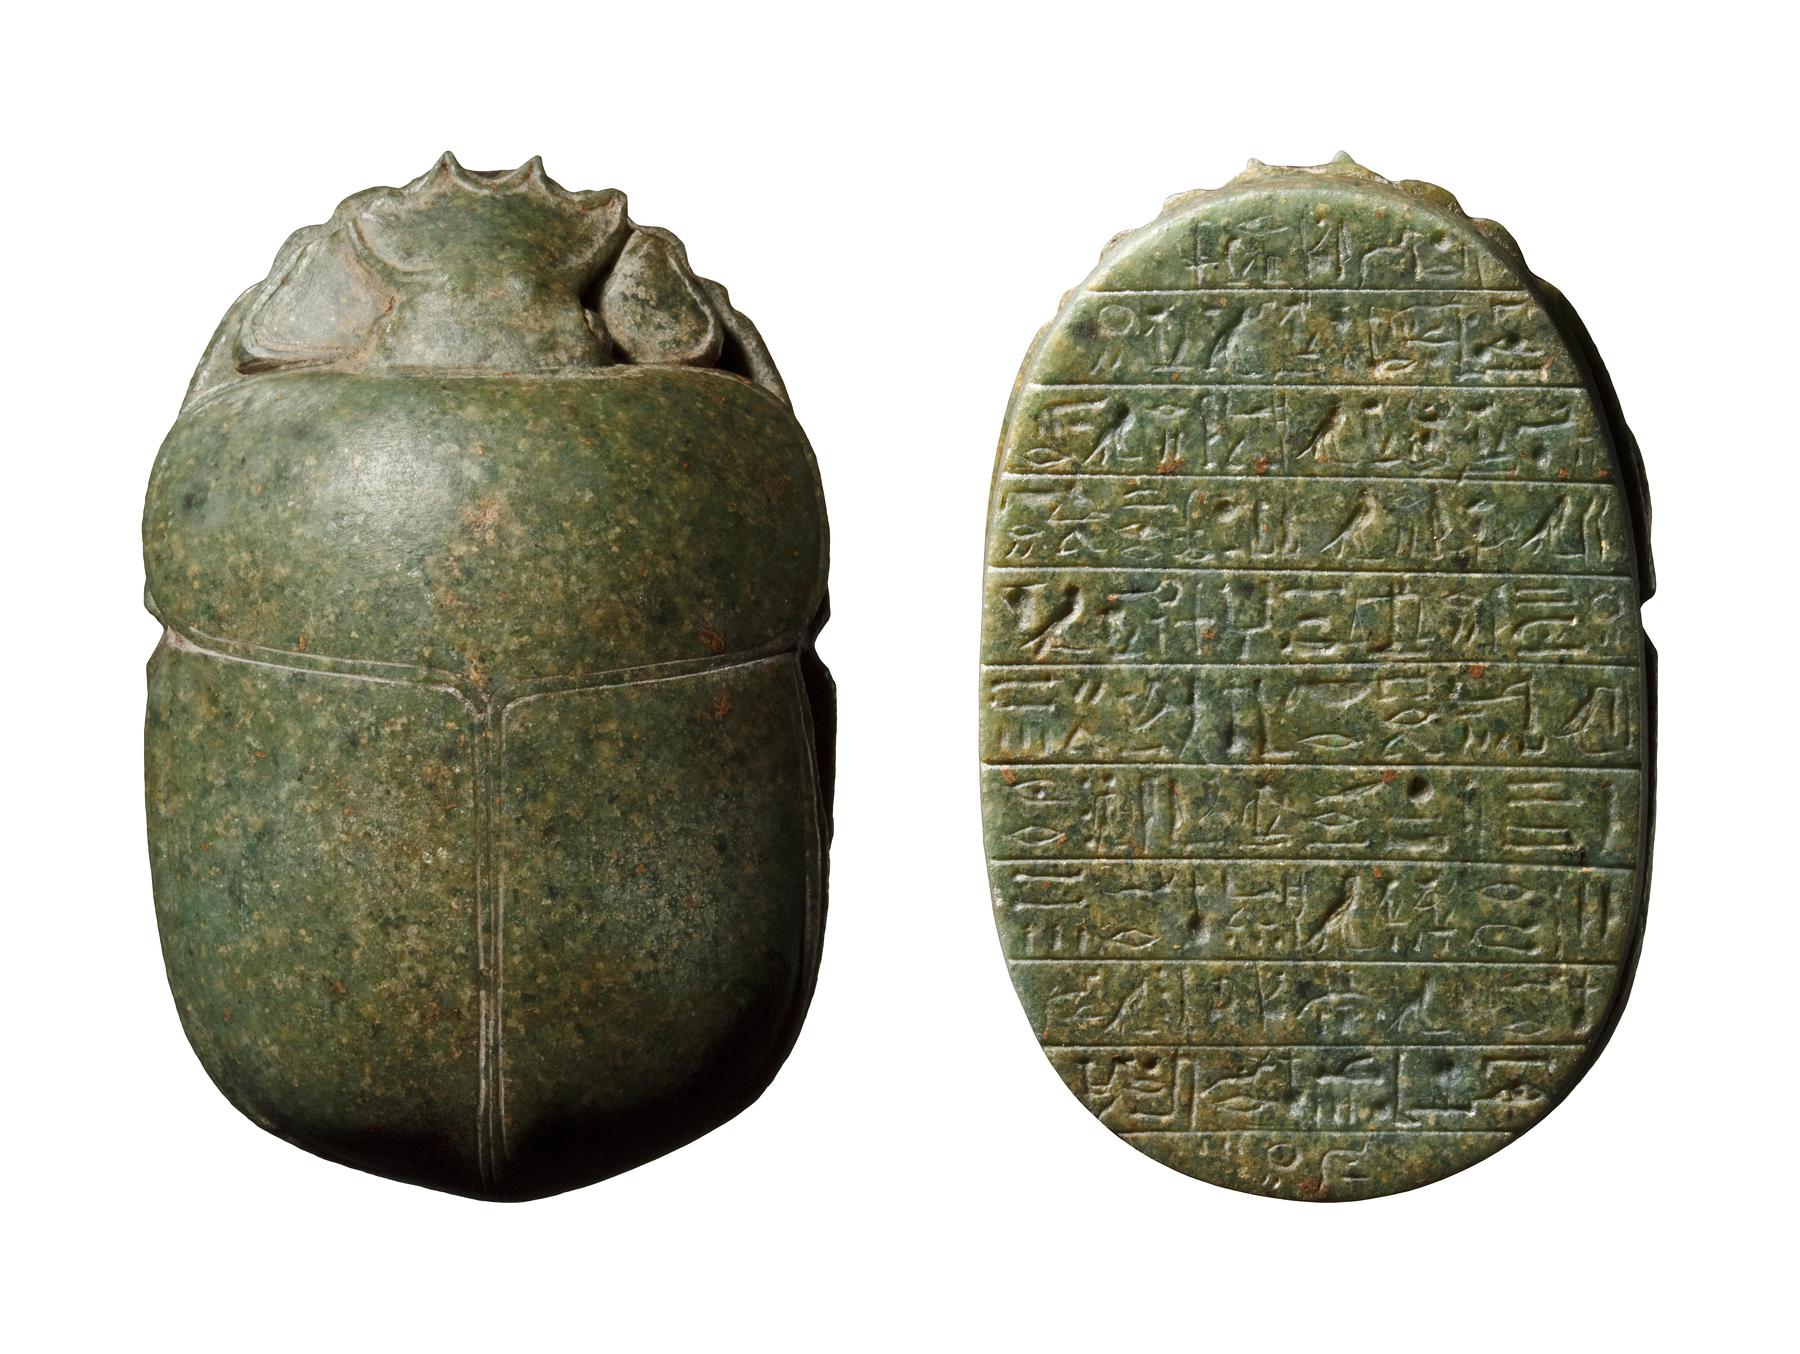 Skarabæ med hieroglyfindskrift, uddrag fra Dødebogen, H403